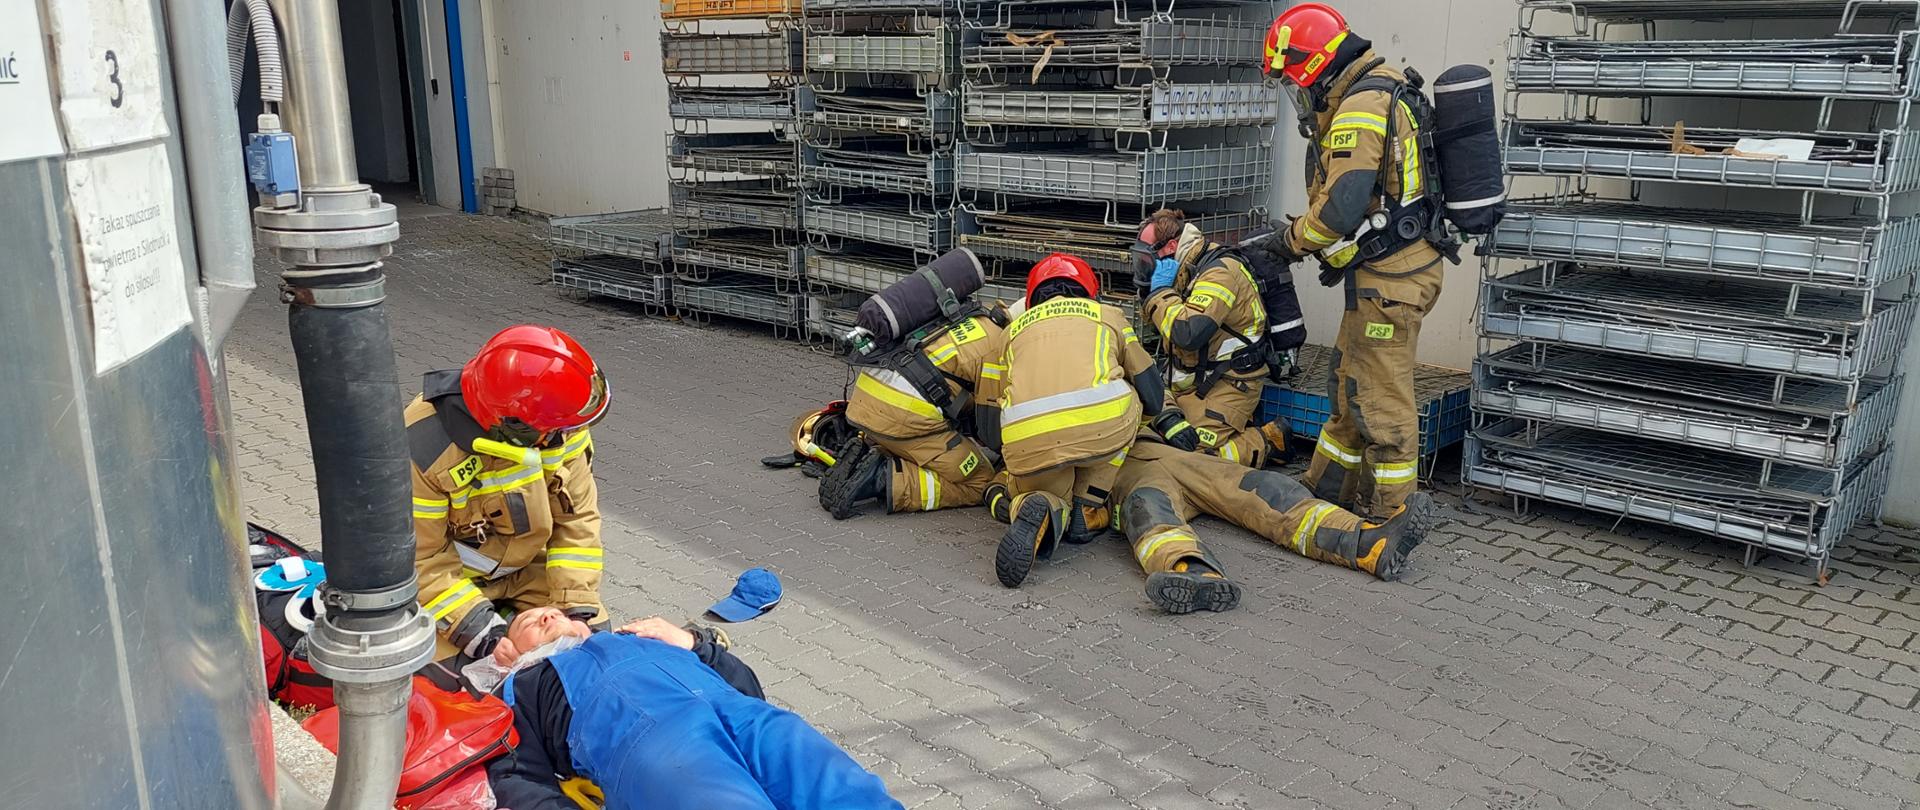 strażacy podczas ćwiczeń udzielający pomocy poszkodowanym